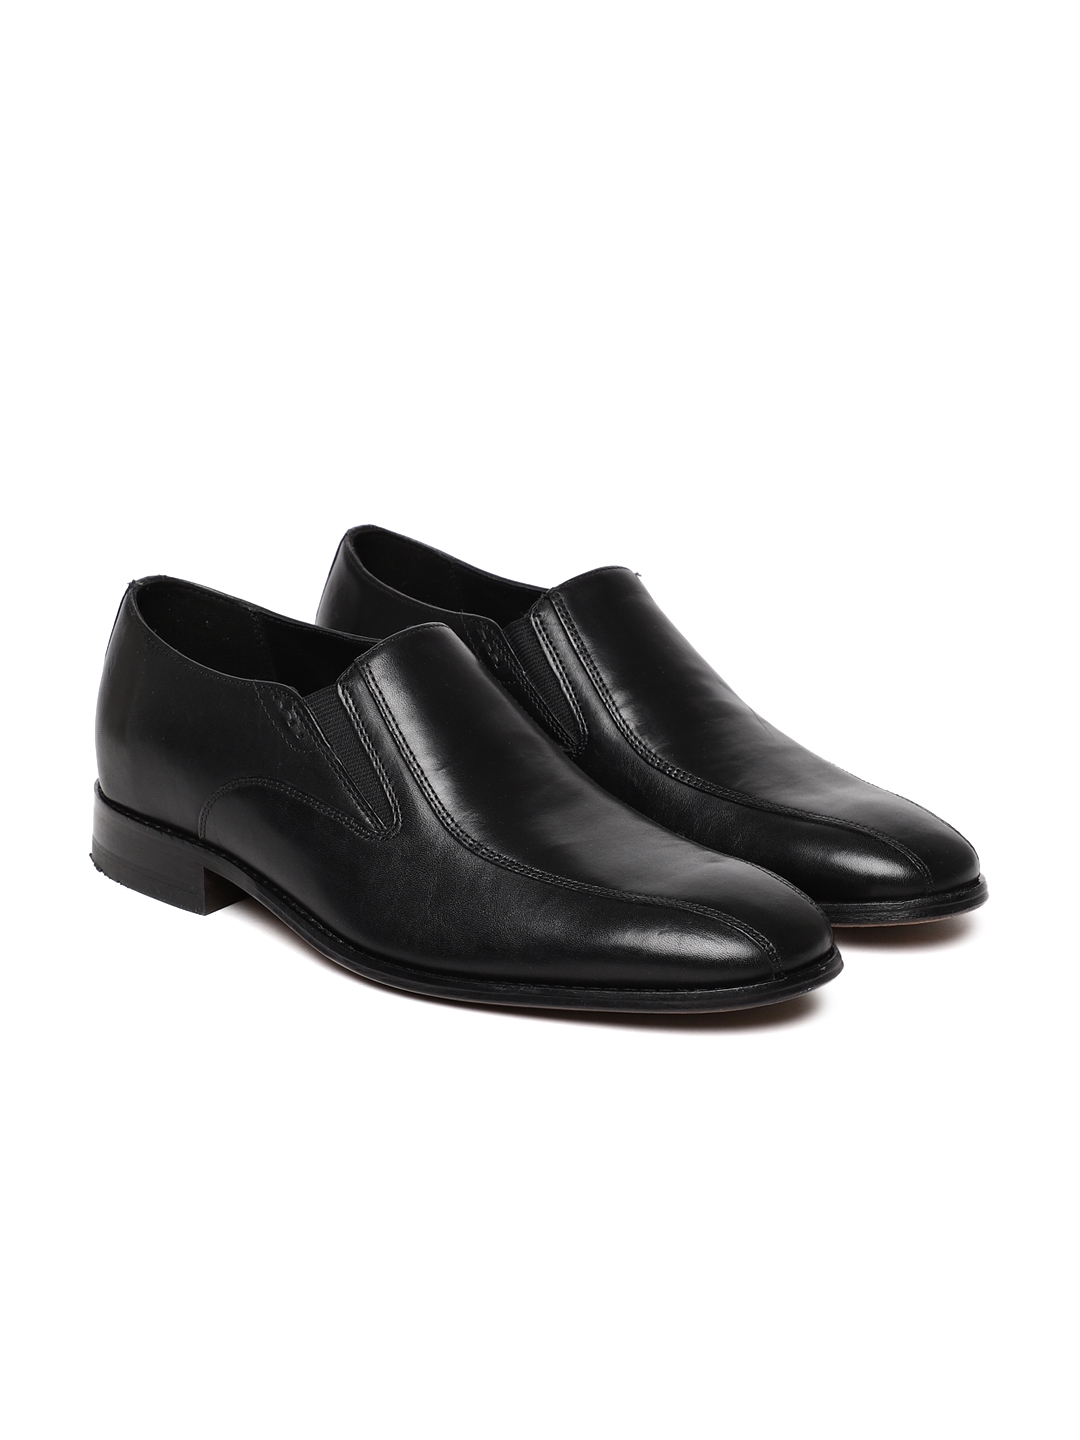 Buy Clarks Bostonian Men Black Nantasket Step Leather Semiformal Slip On  Shoes - Formal Shoes for Men 2437604 | Myntra